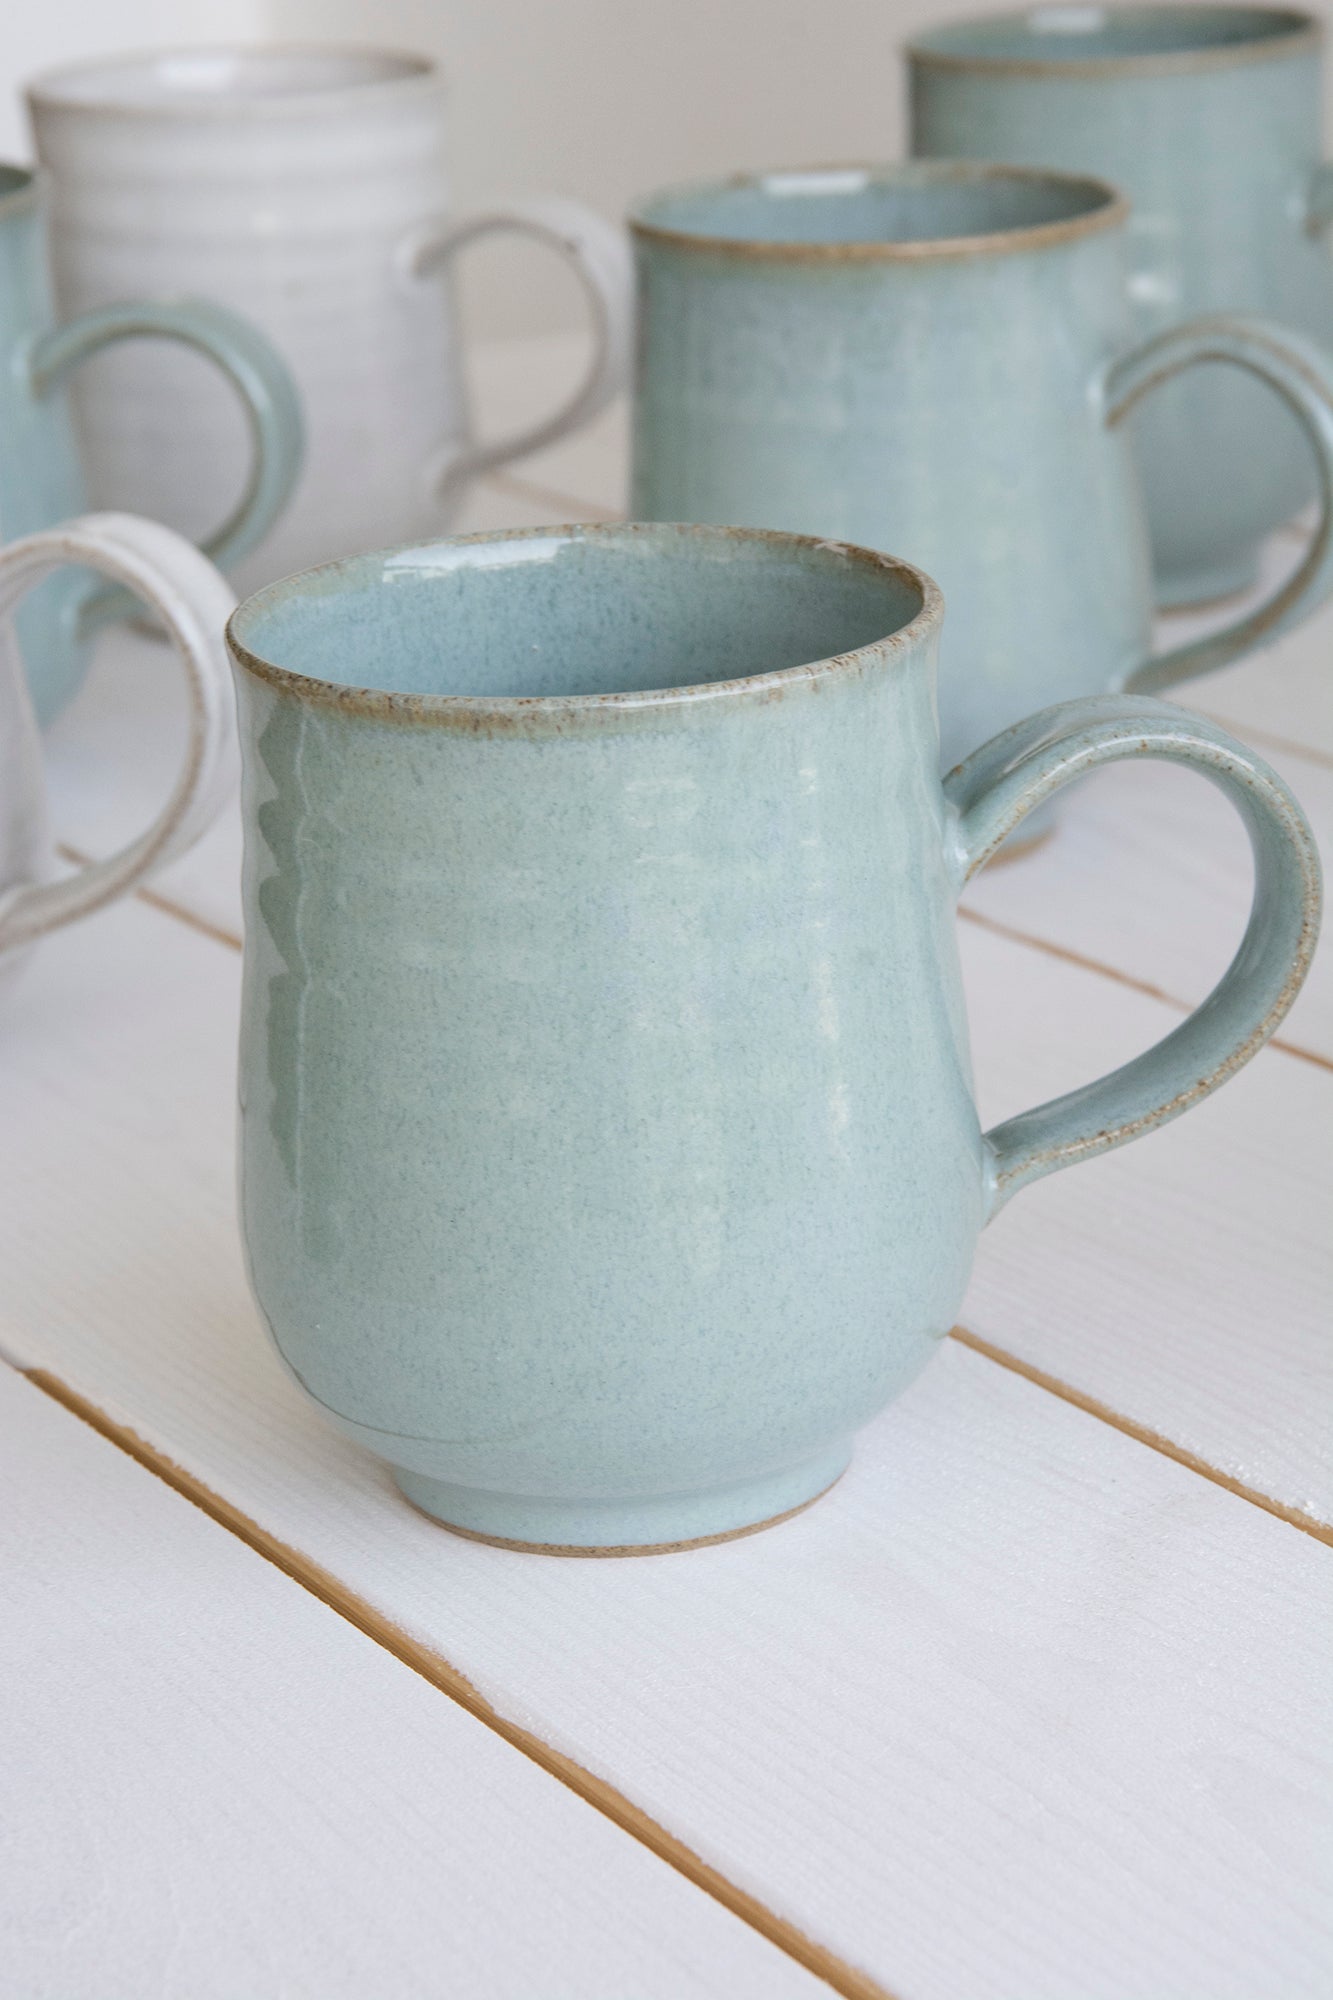 https://www.madaboutpottery.com/cdn/shop/products/set-of-6-pottery-coffee-mugs-in-light-blue-steel-10-fl-oz-319540.jpg?v=1669516032&width=1445